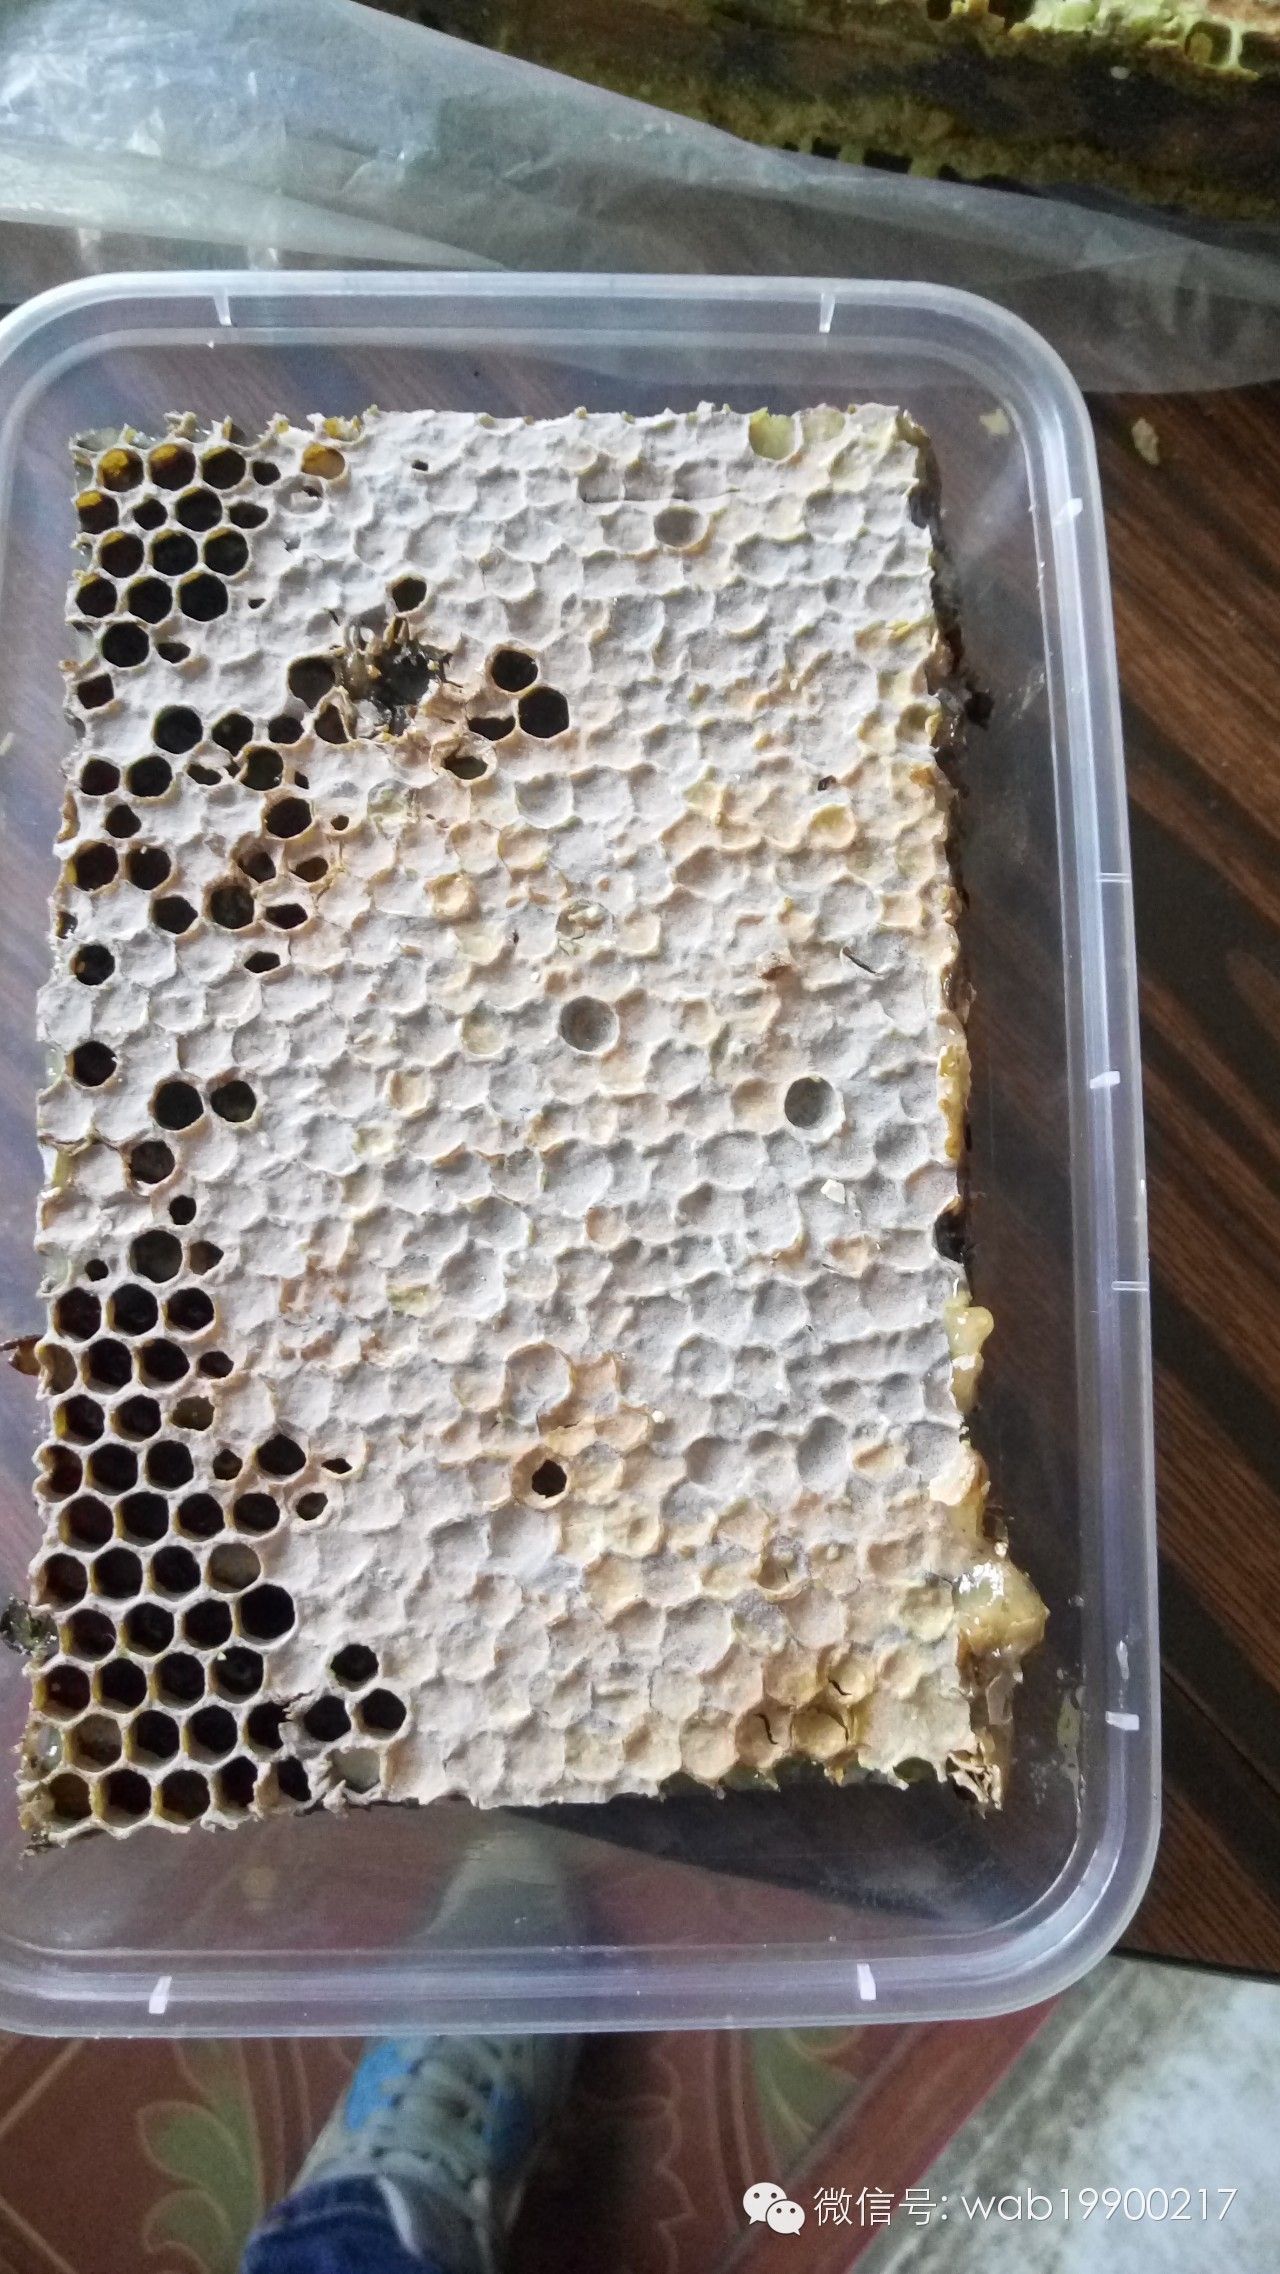 益母草蜂蜜 蜂蜜偏方 蜂蜜哪个牌子的好 真假蜂蜜 喝蜂蜜的好处